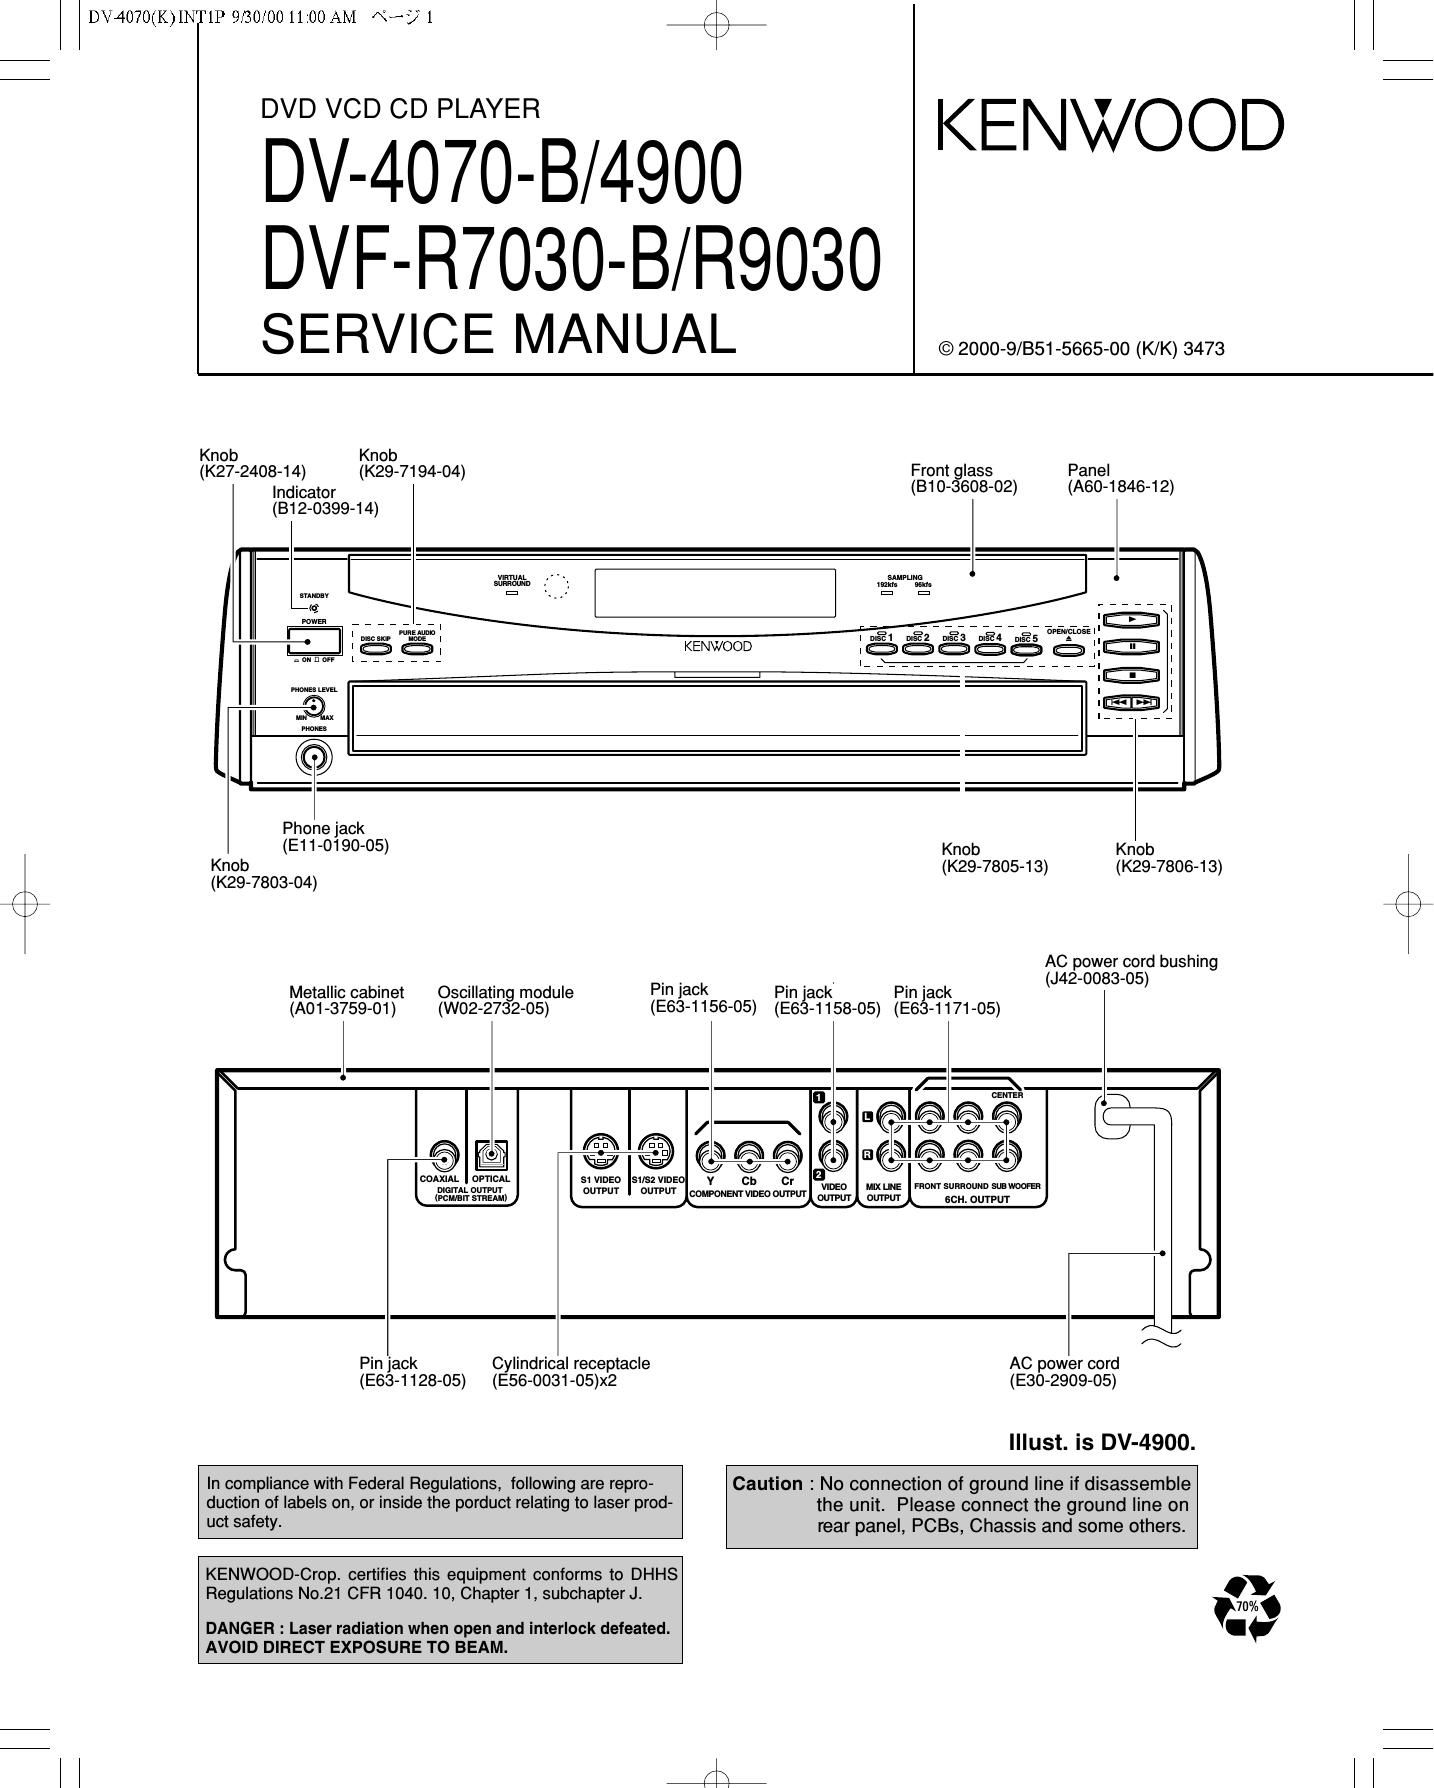 Kenwood DVFR 7030 B Service Manual